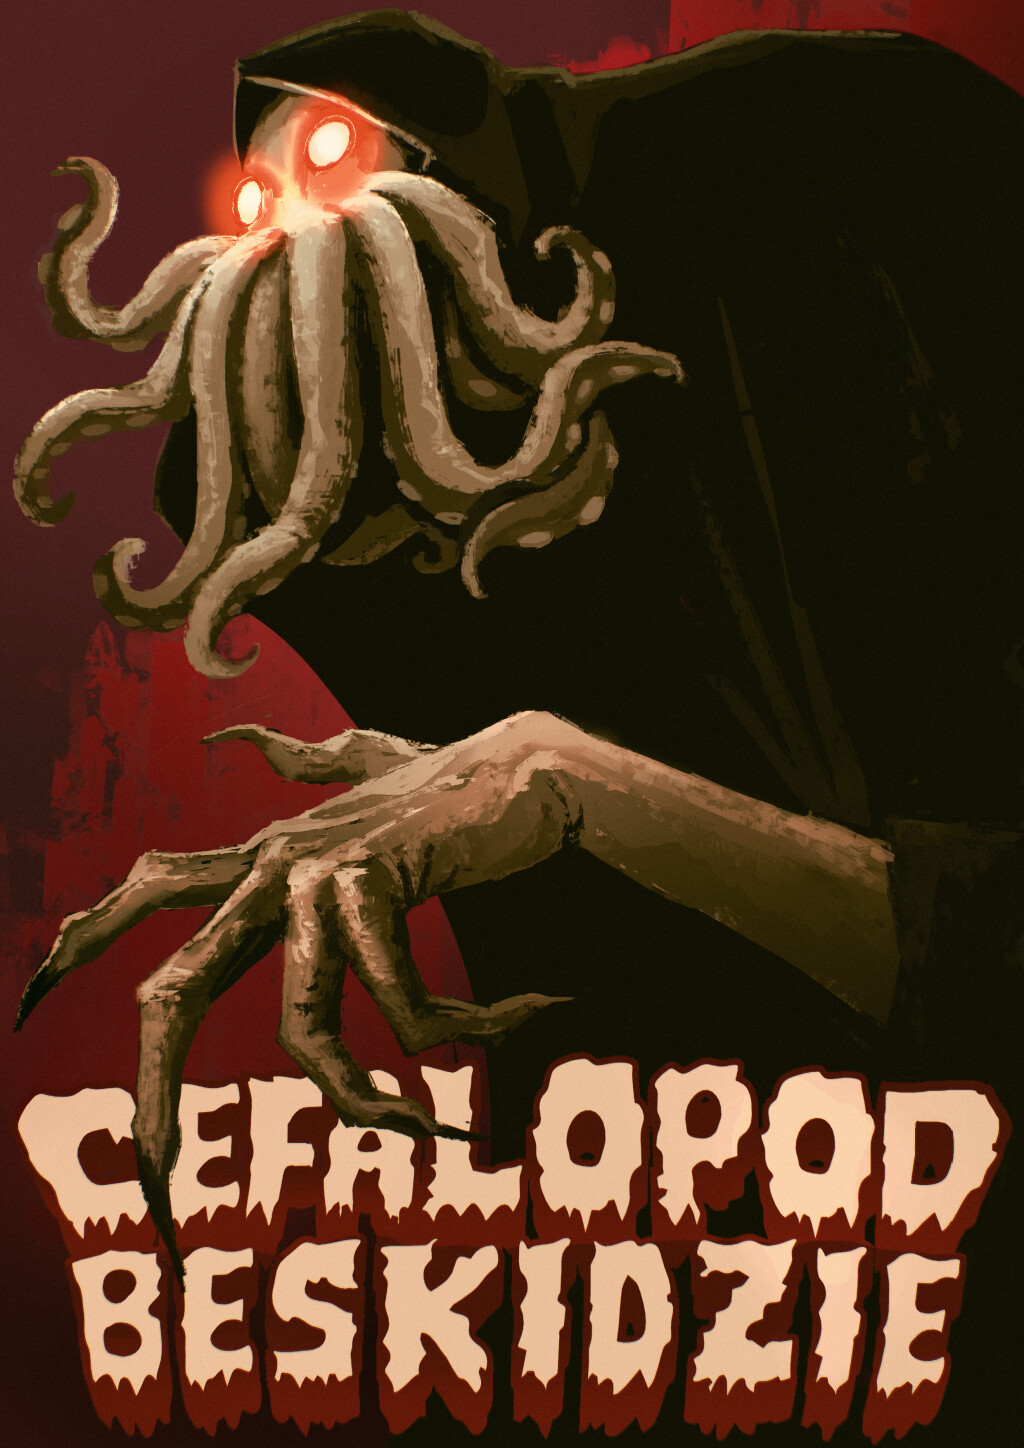 Filmposter for CEFALOPOD BESKIDZIE